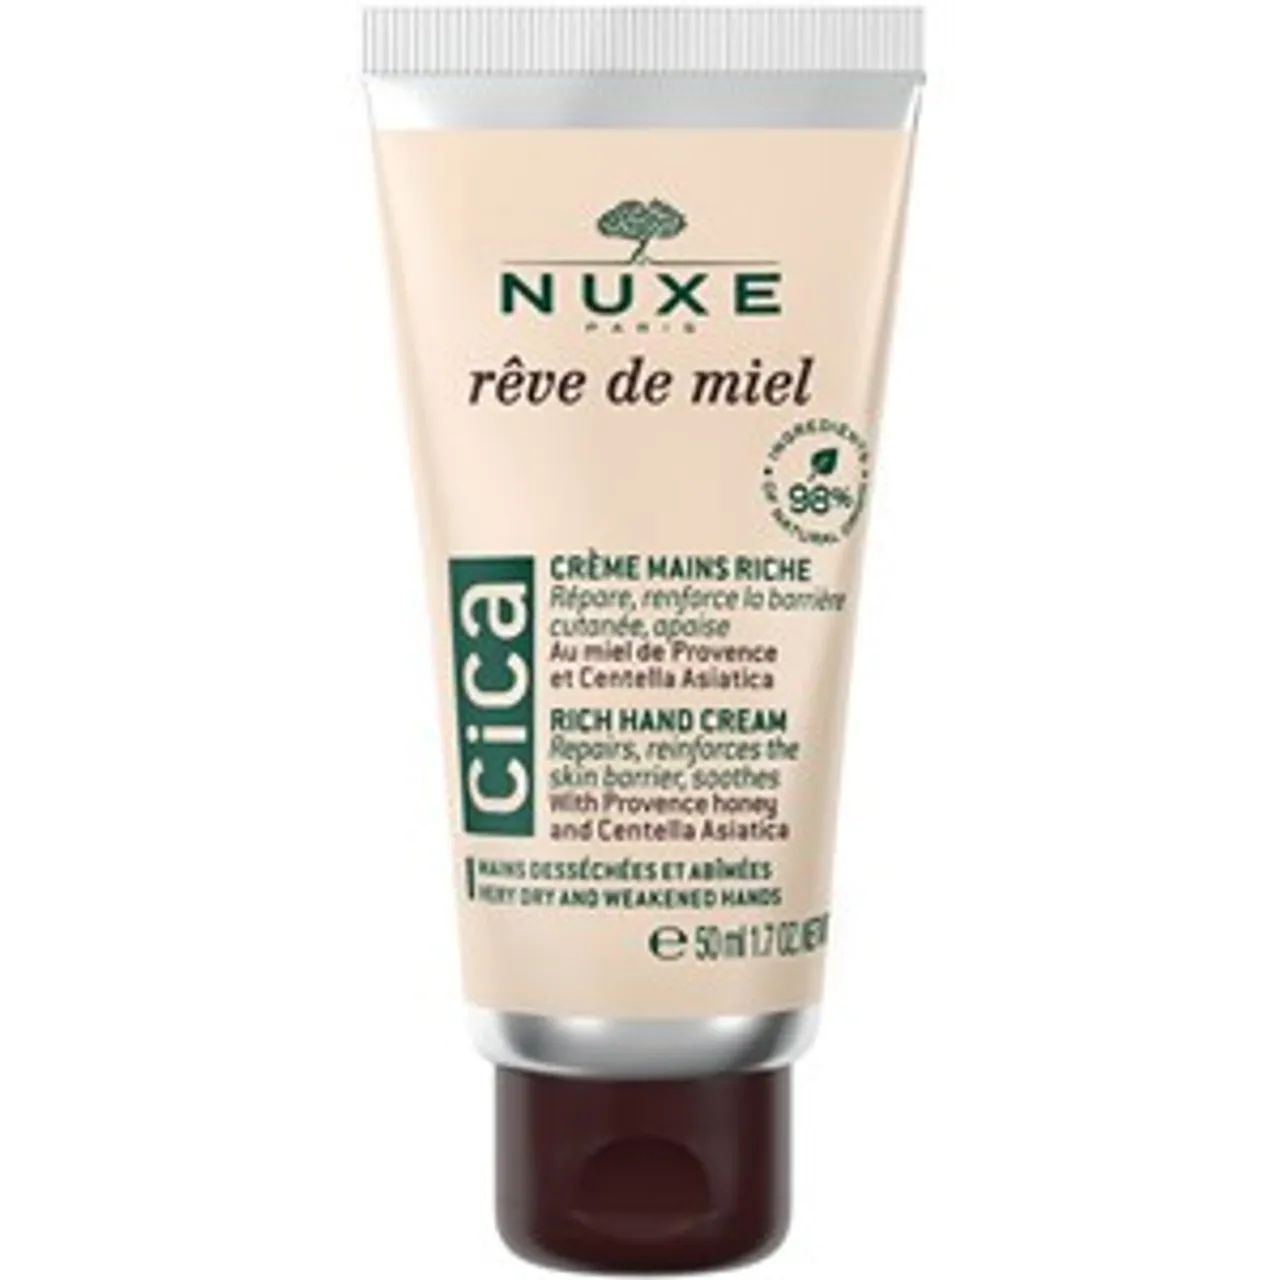 Nuxe Rich Hand Cream Female 50 ml